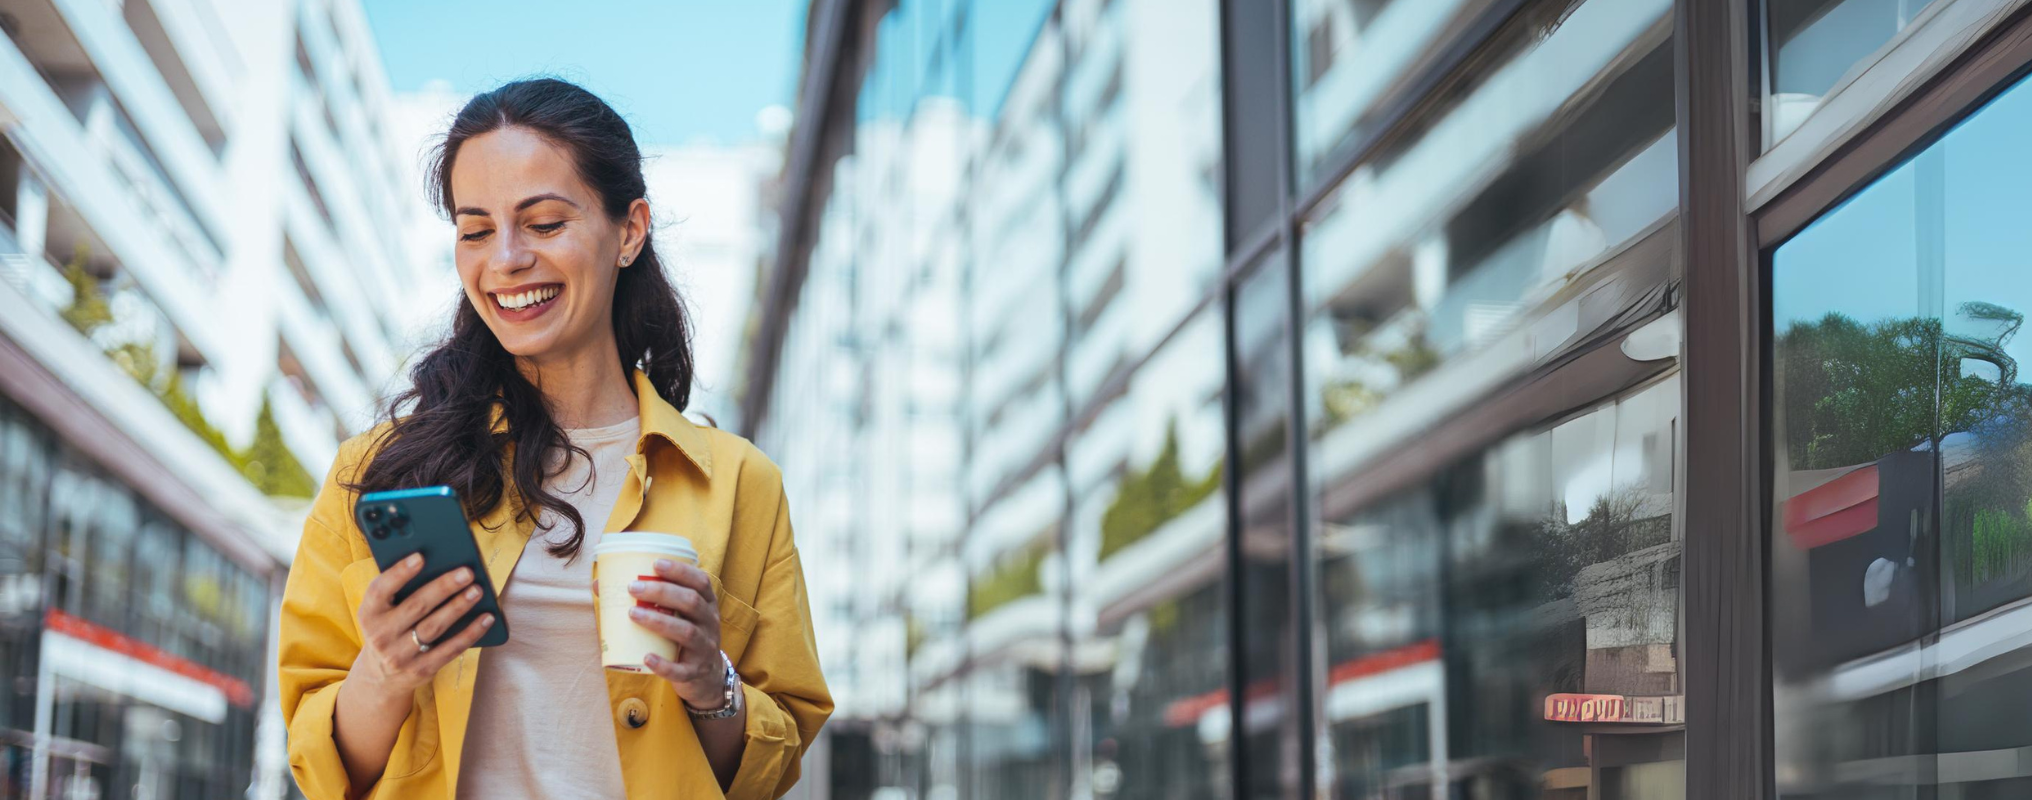 Eine Frau läuft lächelnd durch die Straße, hält in einer Hand einen Kaffee, in der anderen ihr Handy